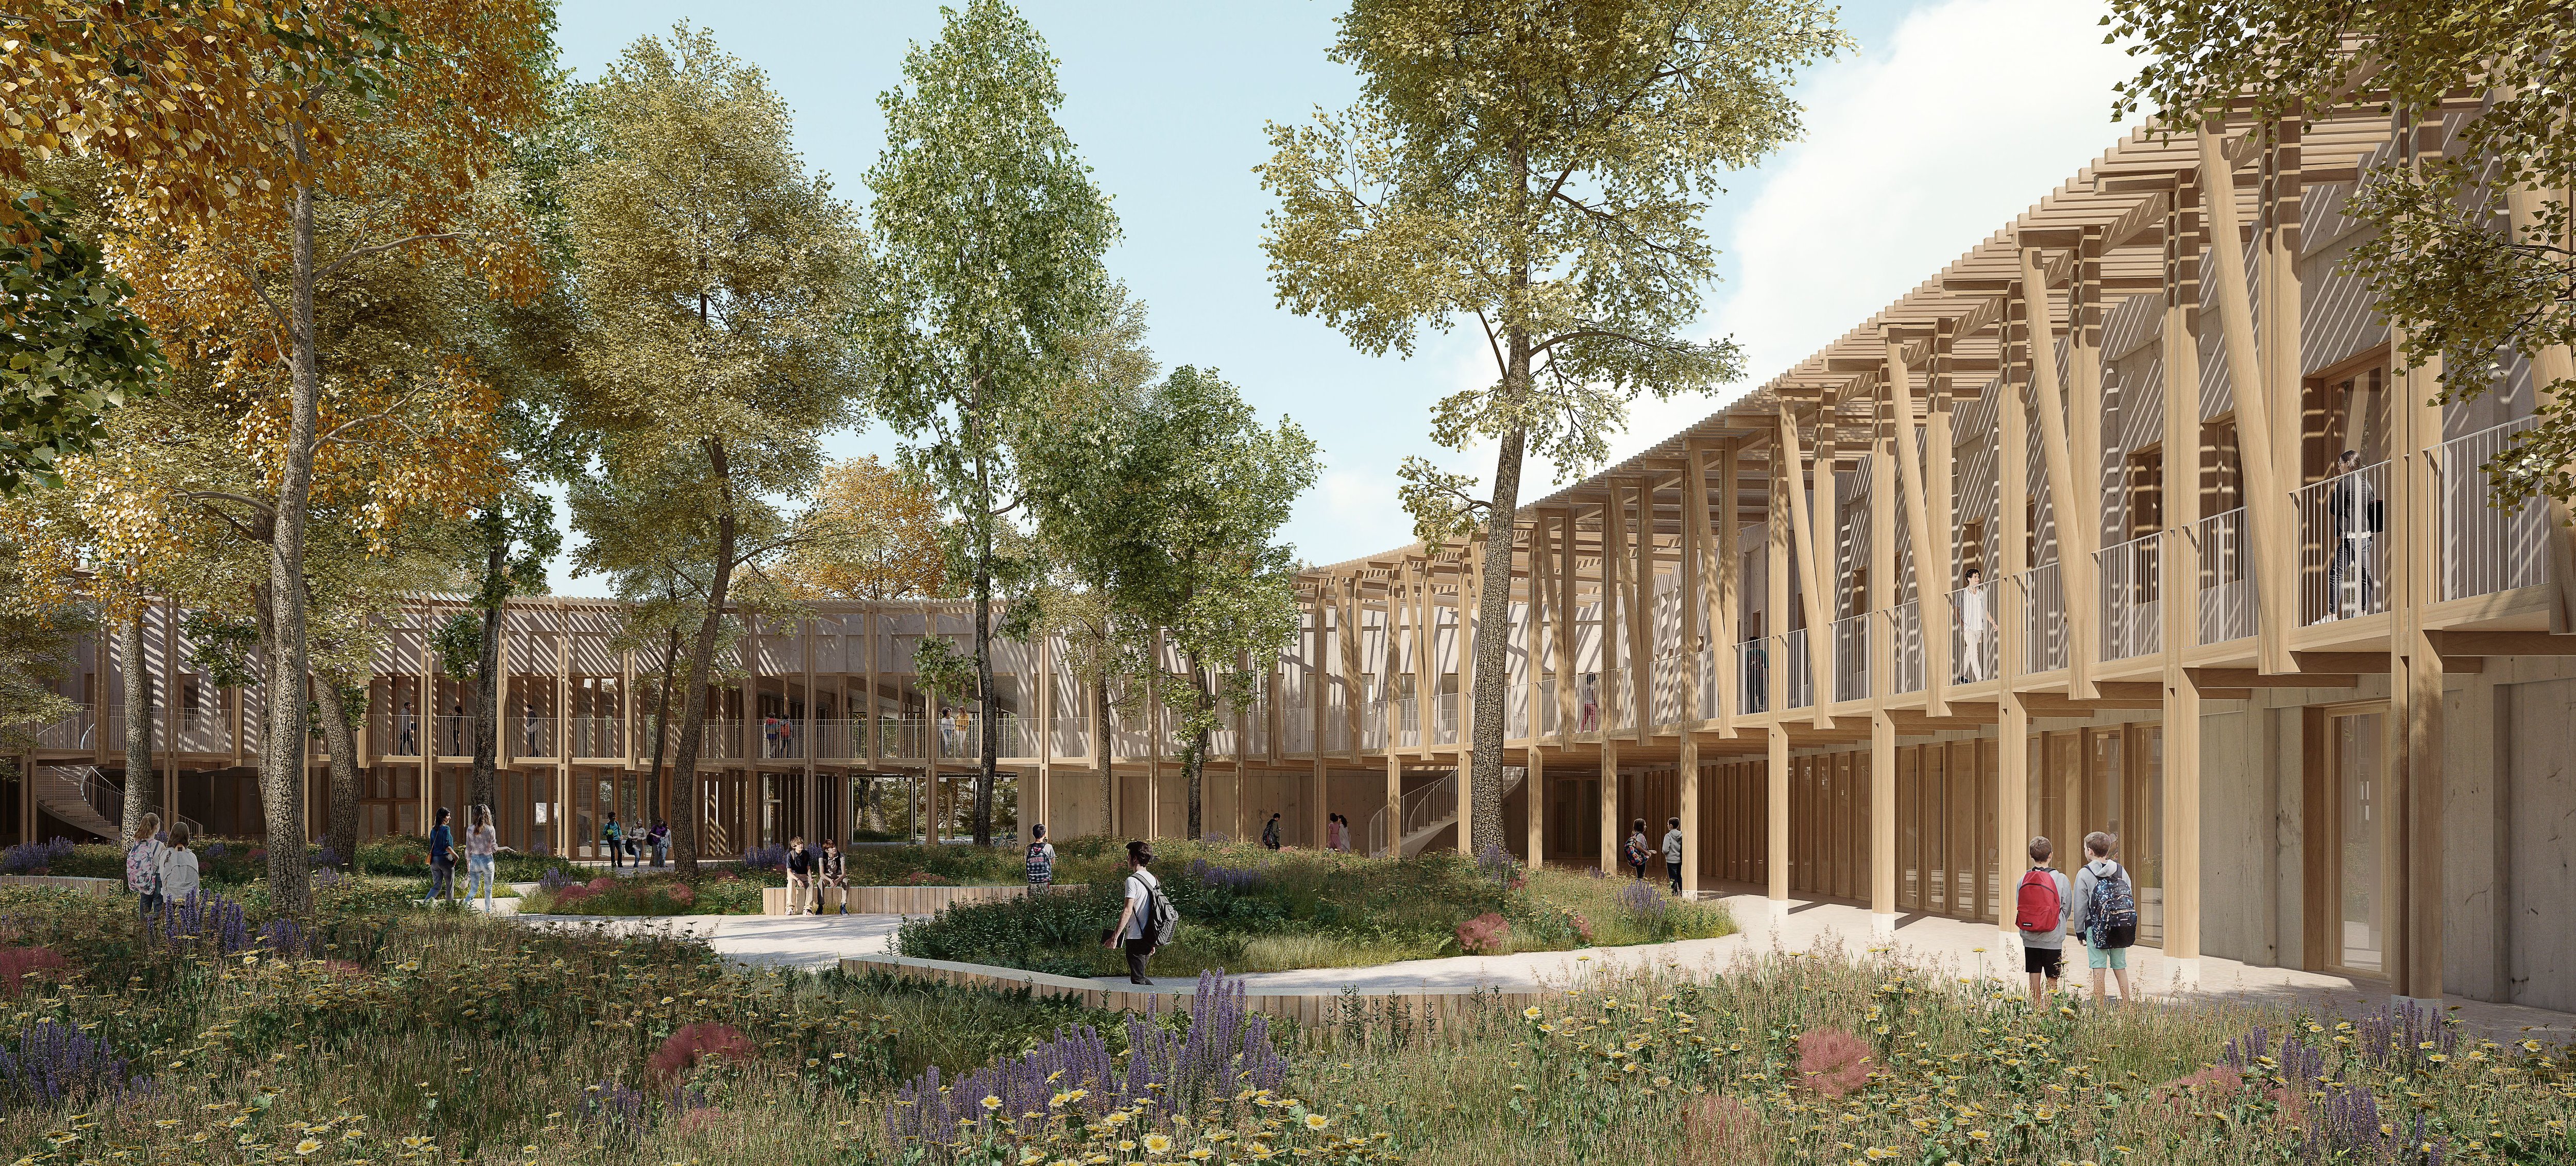 Le futur collège de Fleury-Mérogis (ici une vue d'architectes) pourra accueillir 800 élèves. Il devrait ouvrir ses portes en septembre 2026. Agence K Architectures/RAR-Romain Ghomari